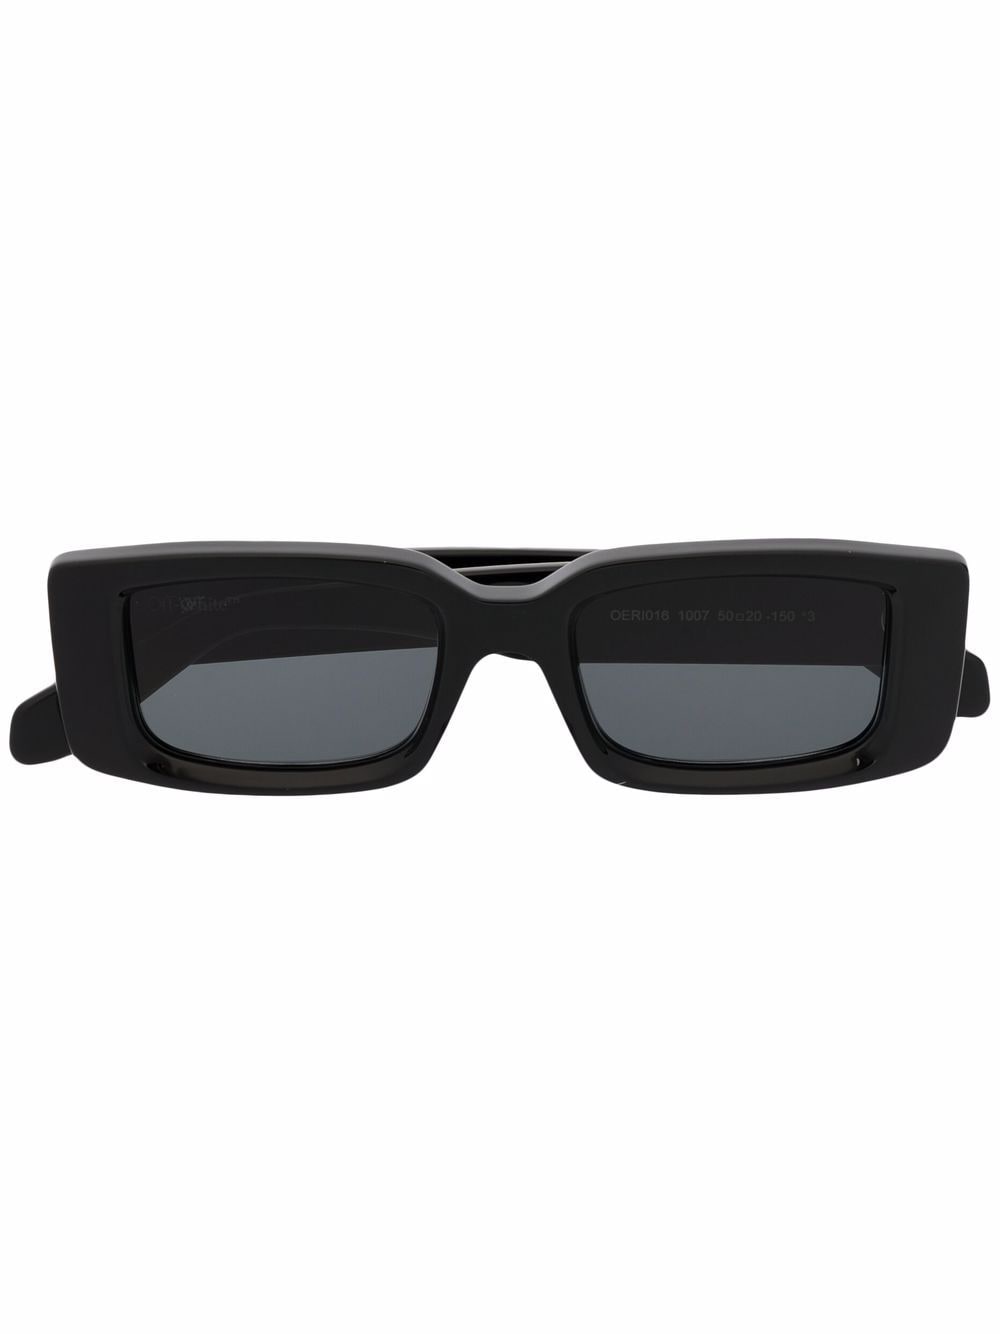 фото Off-white солнцезащитные очки arthur в прямоугольной оправе